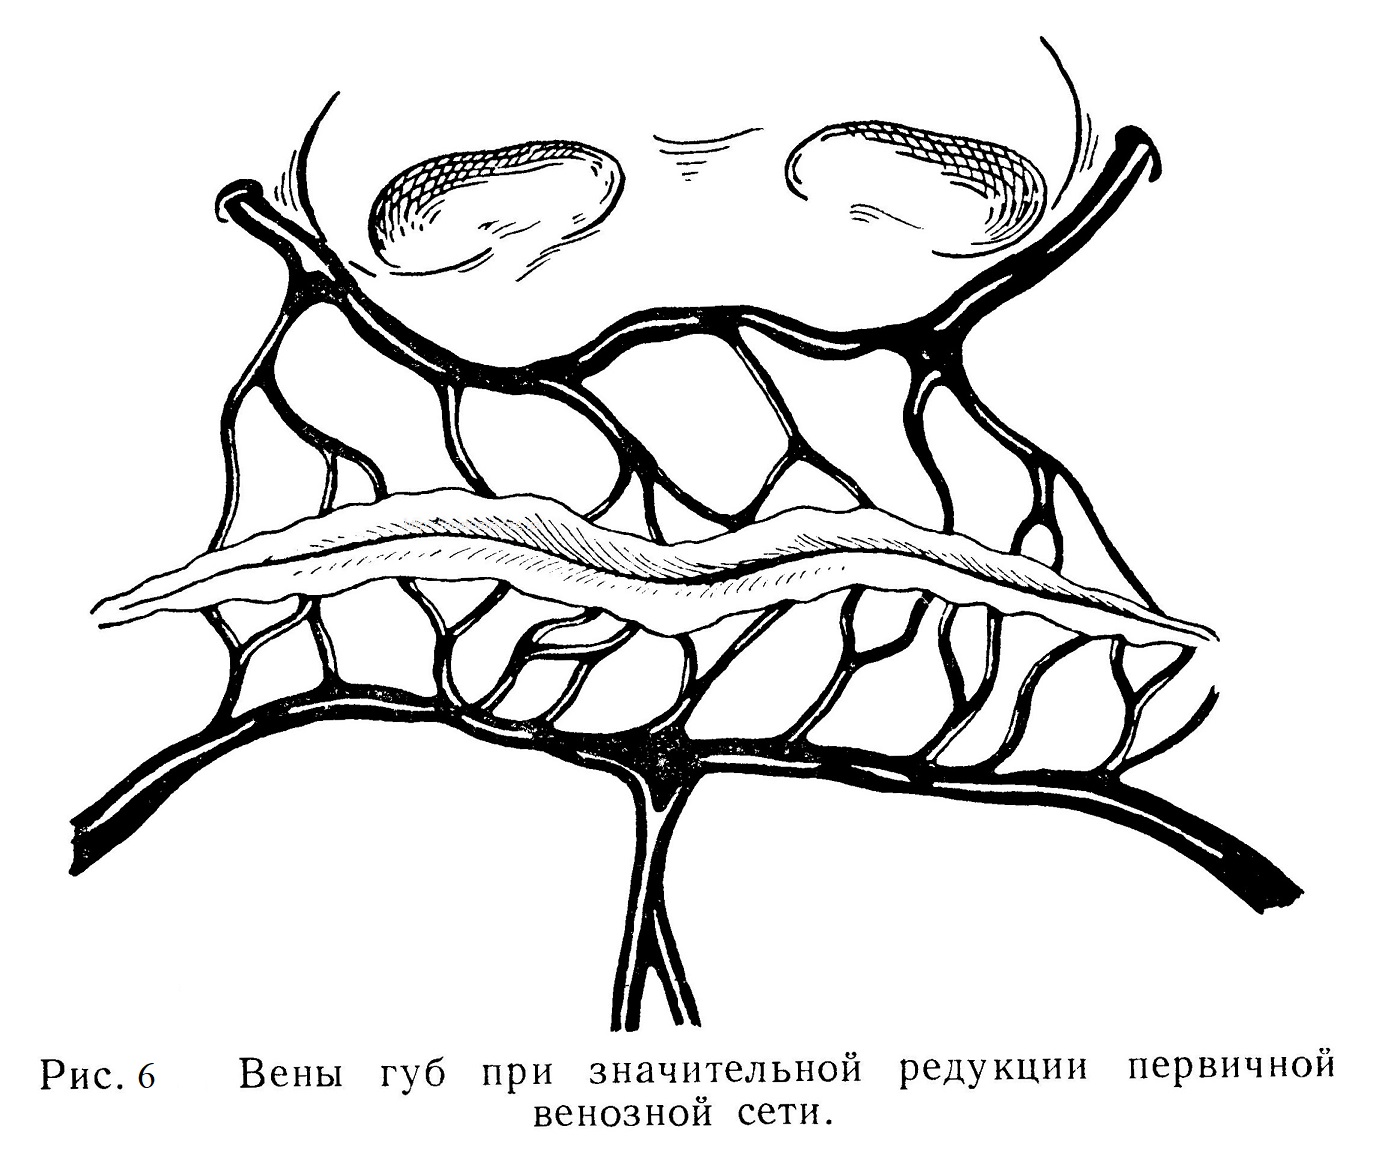 Вены губ при значительной редукции первичной венозной сети